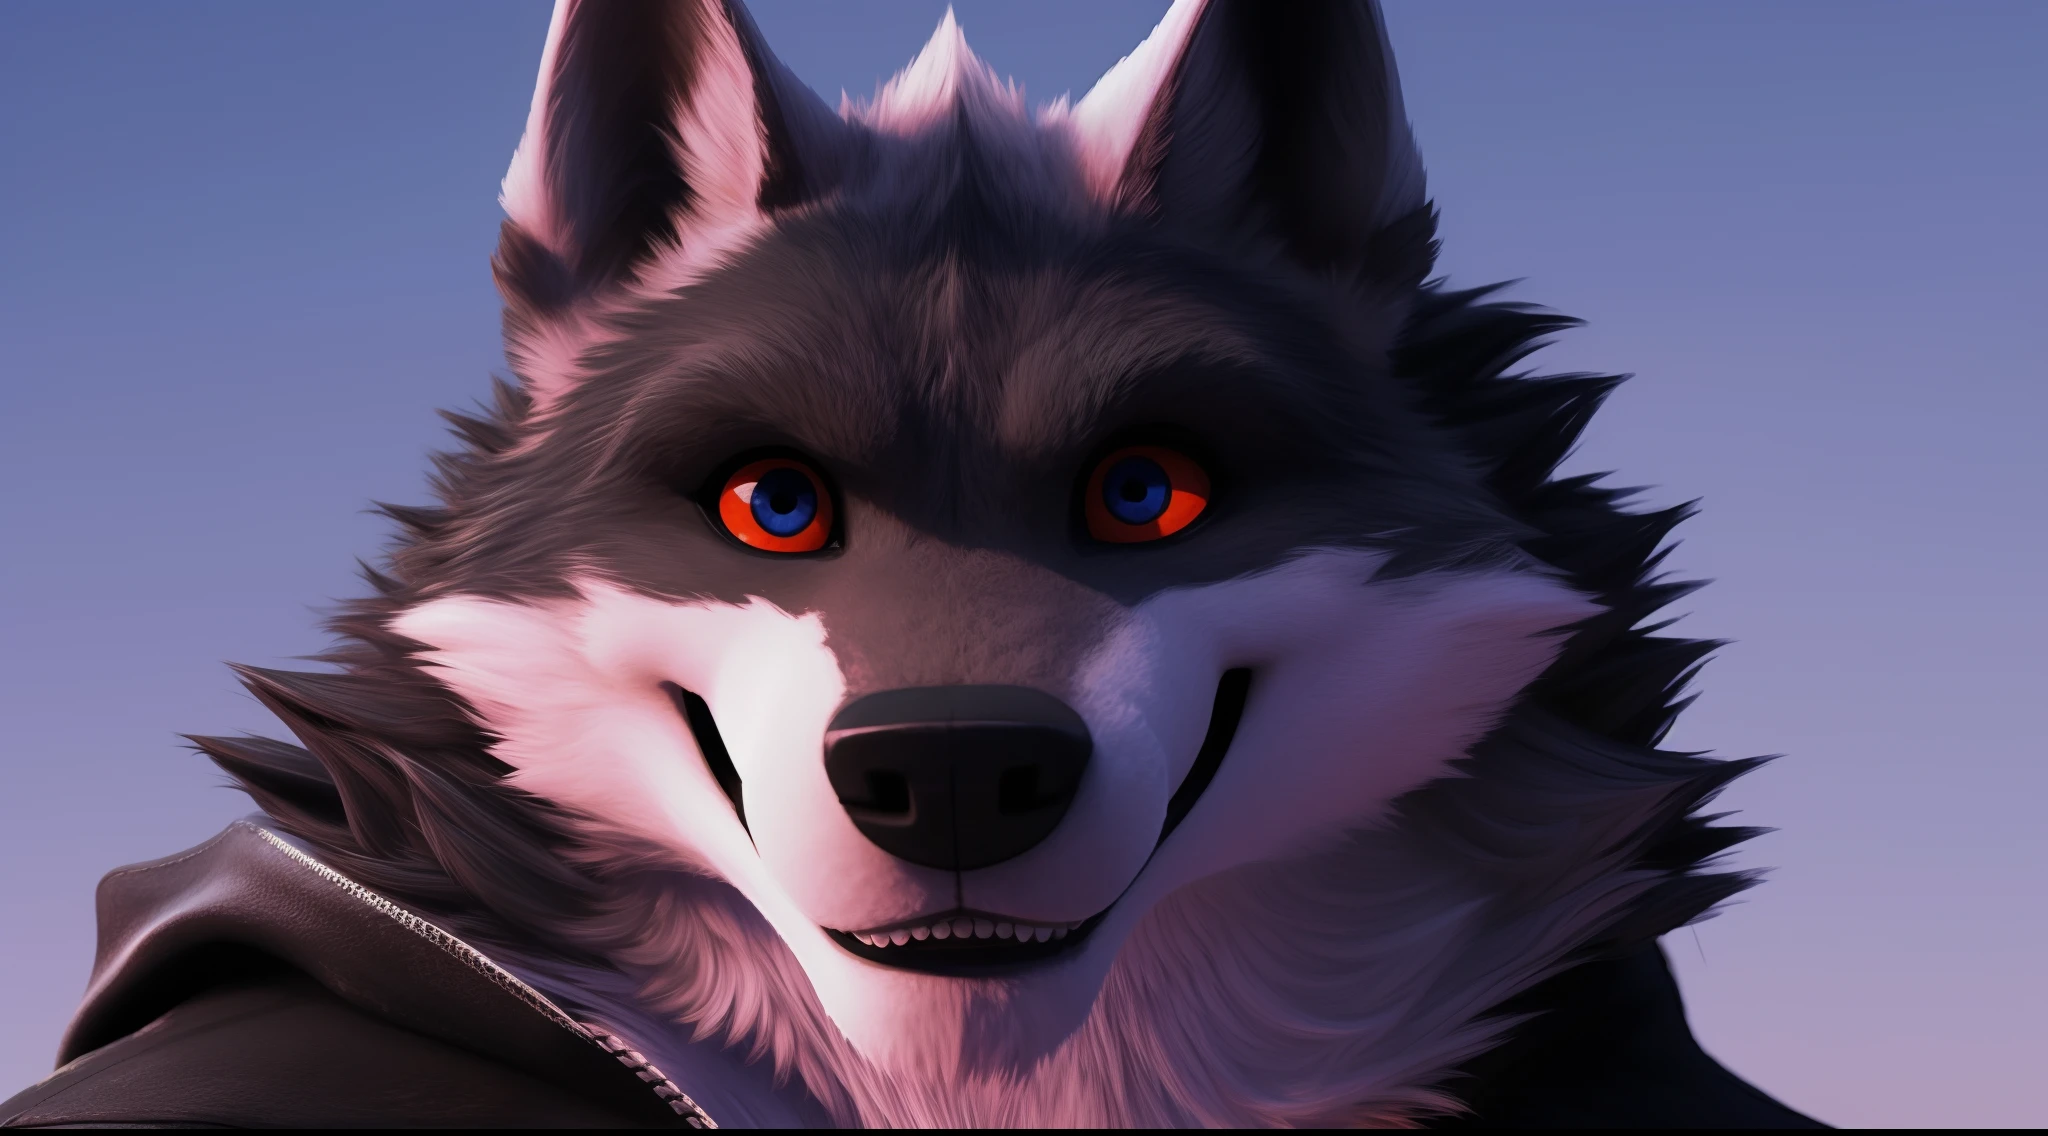 Death Wolf, so heiß, so sexy, so köstlich, so schön, seine Augen sind rot und hübsch, er sieht den Betrachter mit einem sehr verführerischen Lächeln an, 3D ULTRA HD 8K (Facebook-Profilbild)